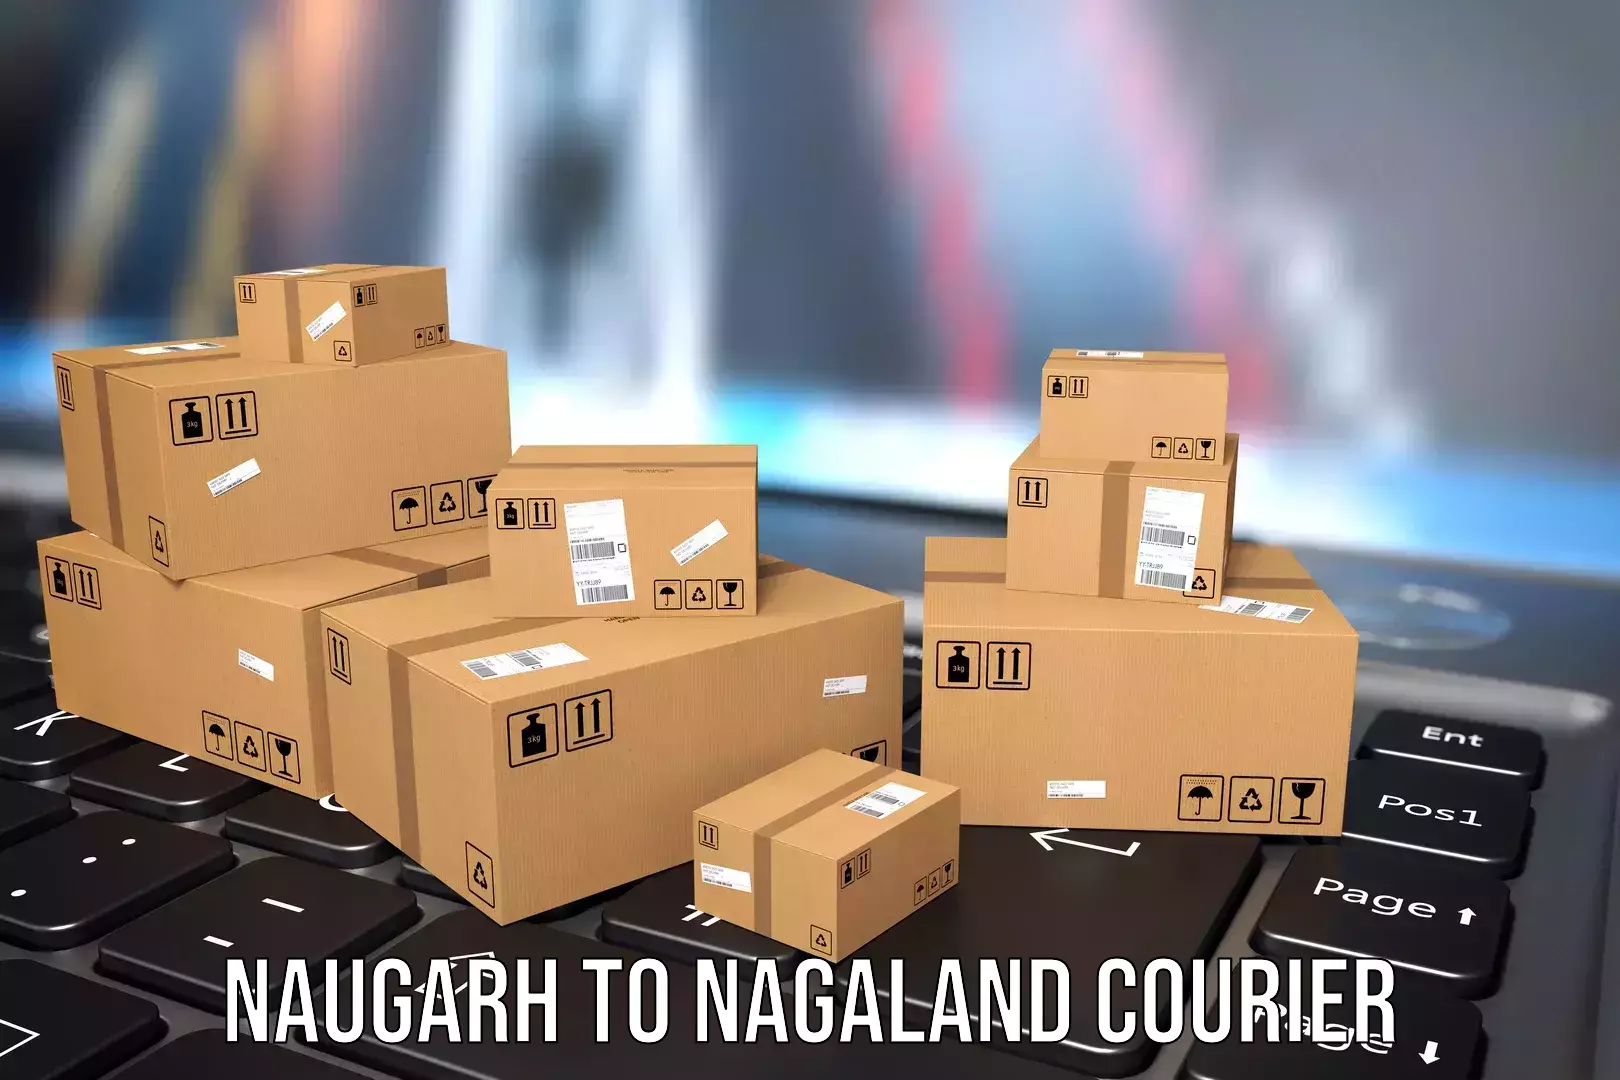 Luggage transfer service Naugarh to Wokha